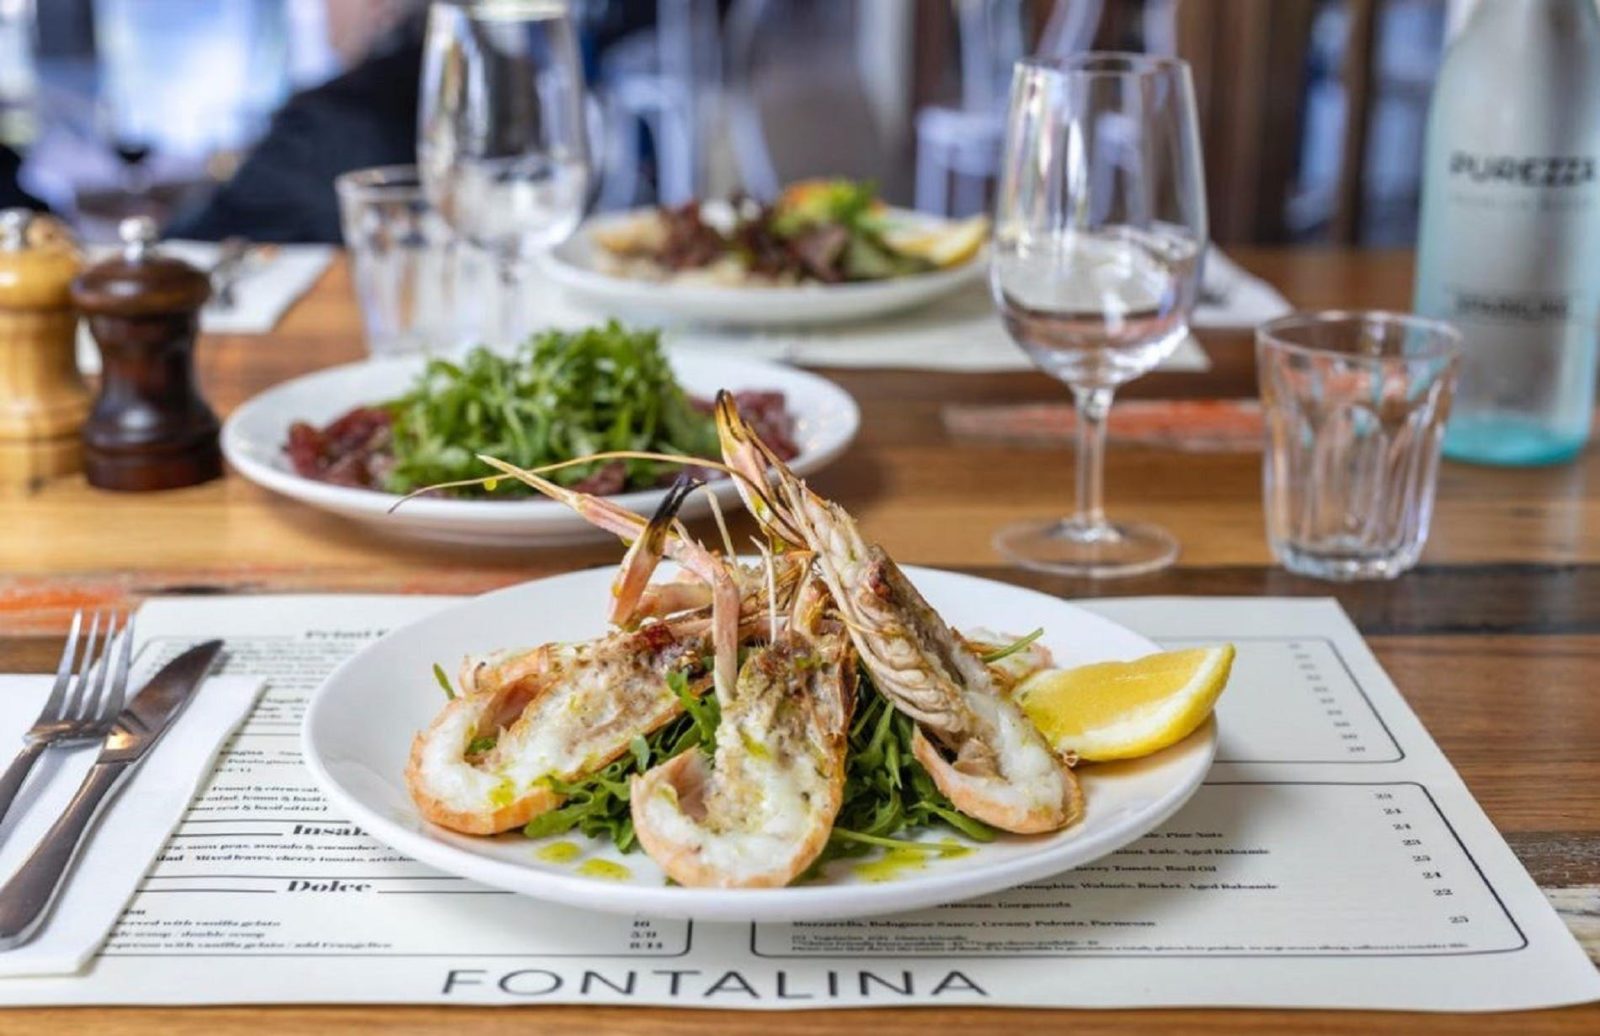 Seafood dish at Fontalina